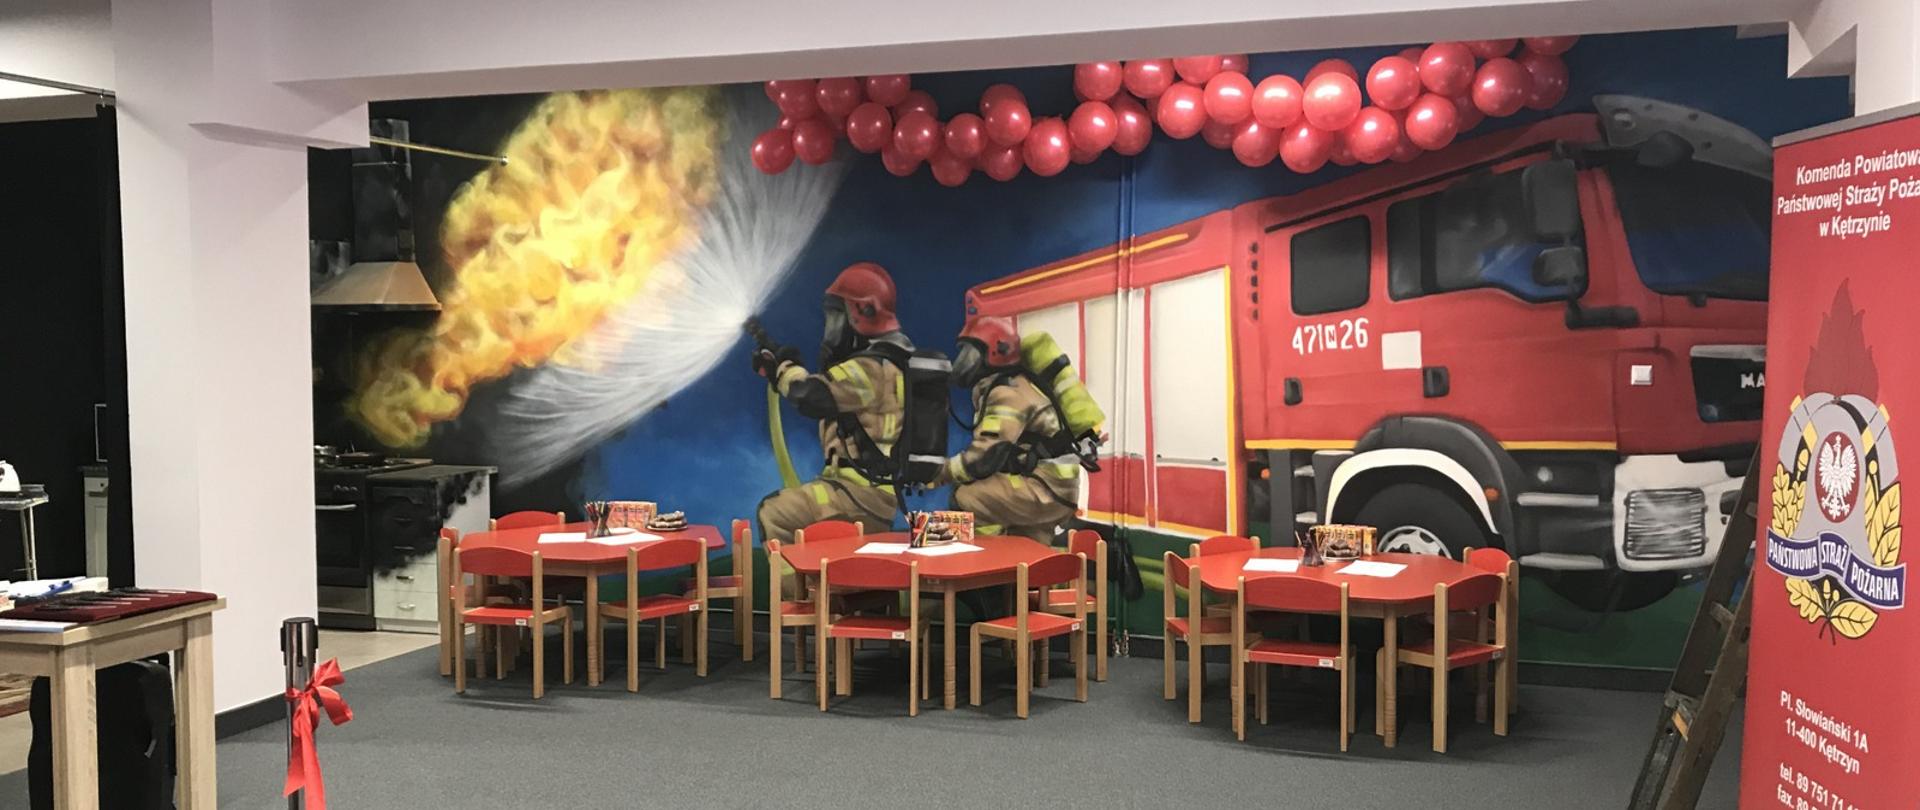 Zdjęcie zrobione w Sali Edukacyjnej w Kętrzynie. Stoliki z krzesełkami dla dzieci oraz ściana z namalowanym muralem przedstawiającym wóz strażacki, dwóch strażaków ubranych w pełne ubranie bojowe oraz ogień wydobywający się z kuchni budynku.